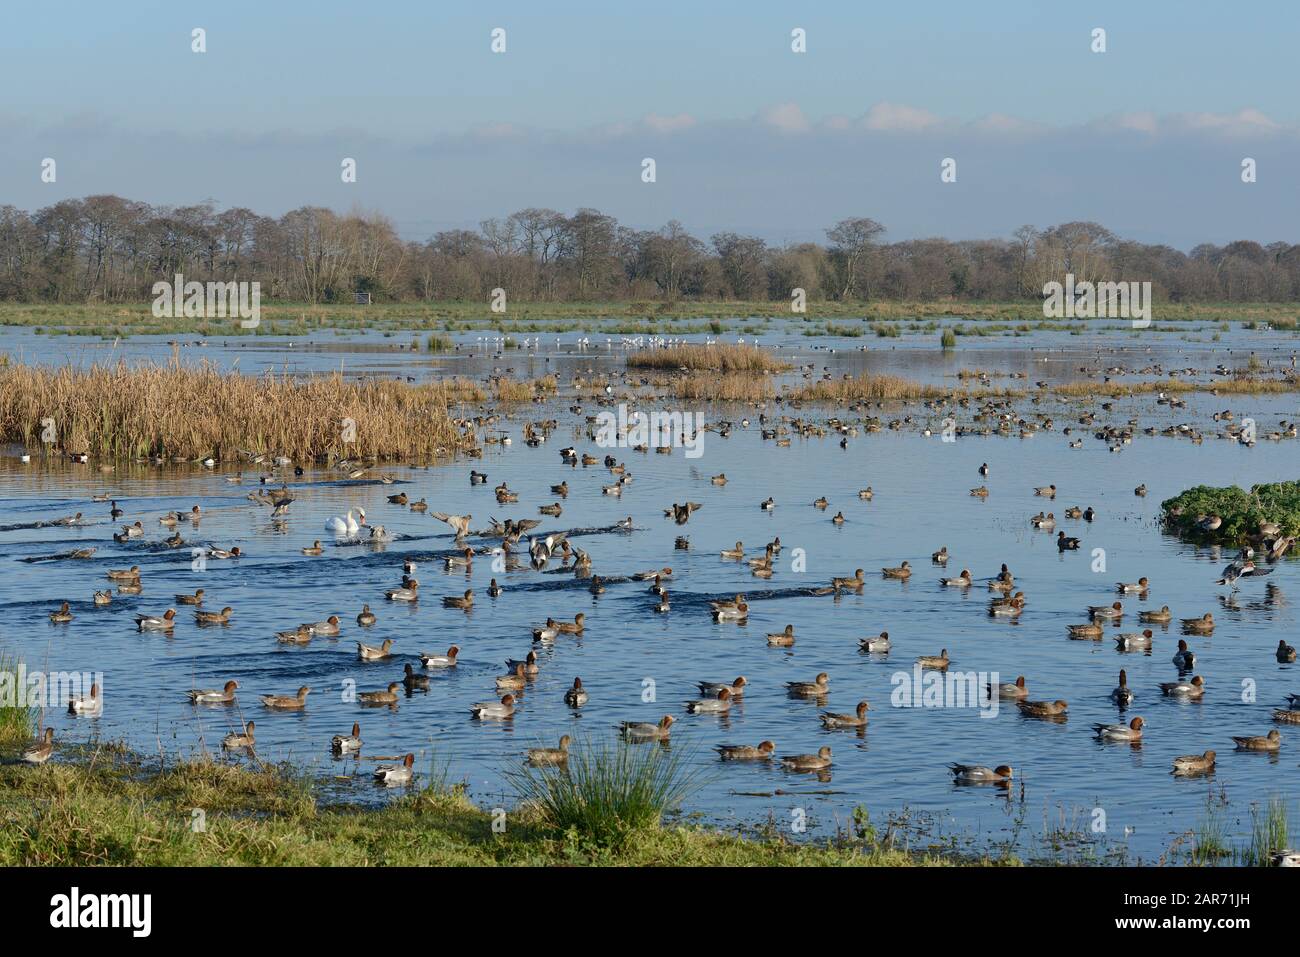 Wigeon (Anas penelope) scharen sich und andere Wildvögel auf überschwemmtem Weideland, Catcott Lows National Nature Reserve, Somerset Levels, Großbritannien. Stockfoto